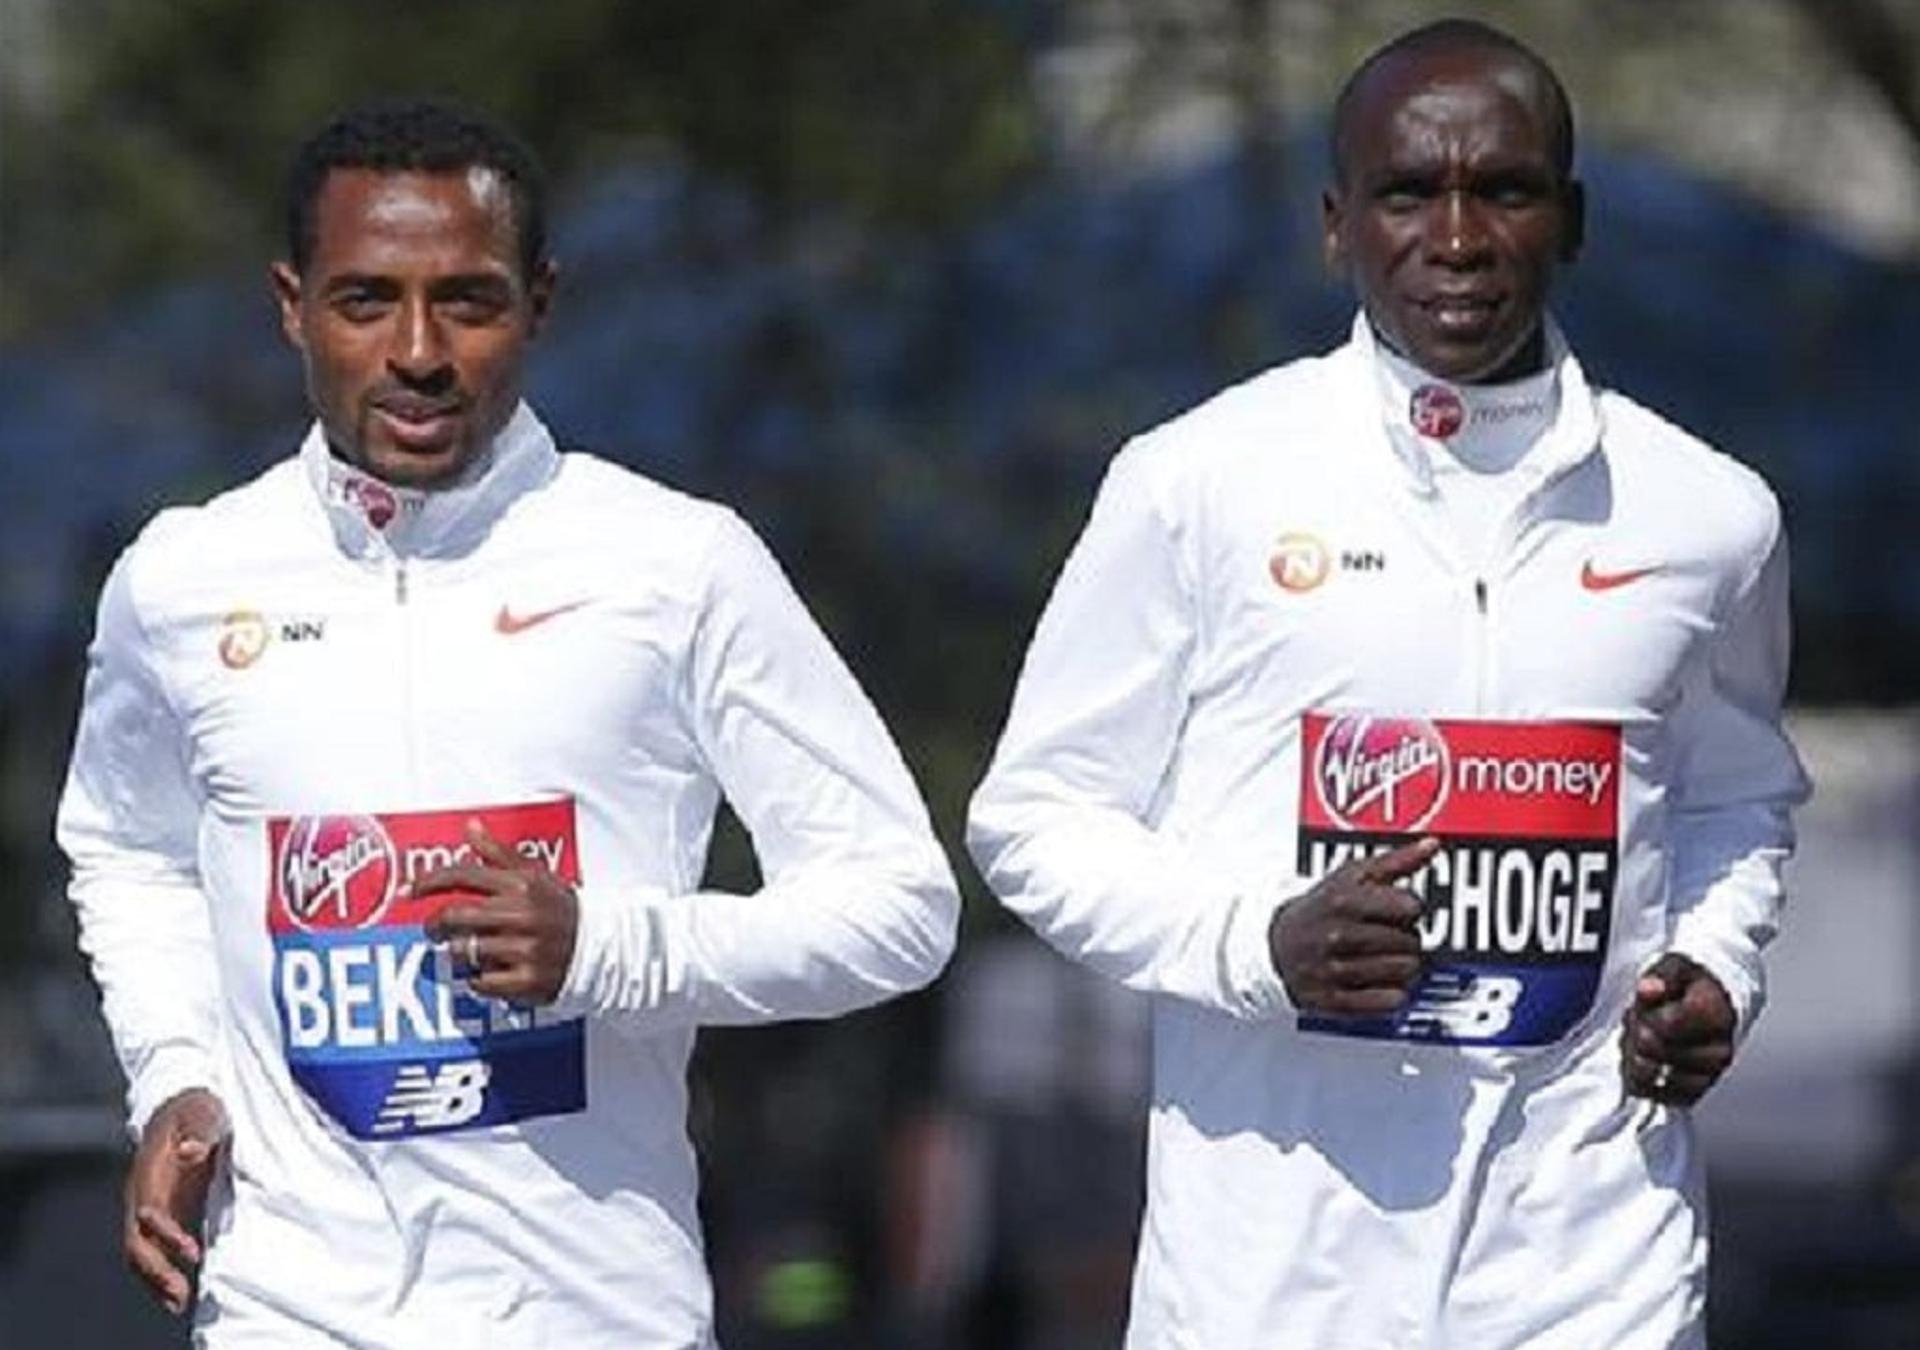 Maratona de Londres vai reunir os dois melhores maratonistas da atualidade Bekele e Kipchoge. (Divulgação)